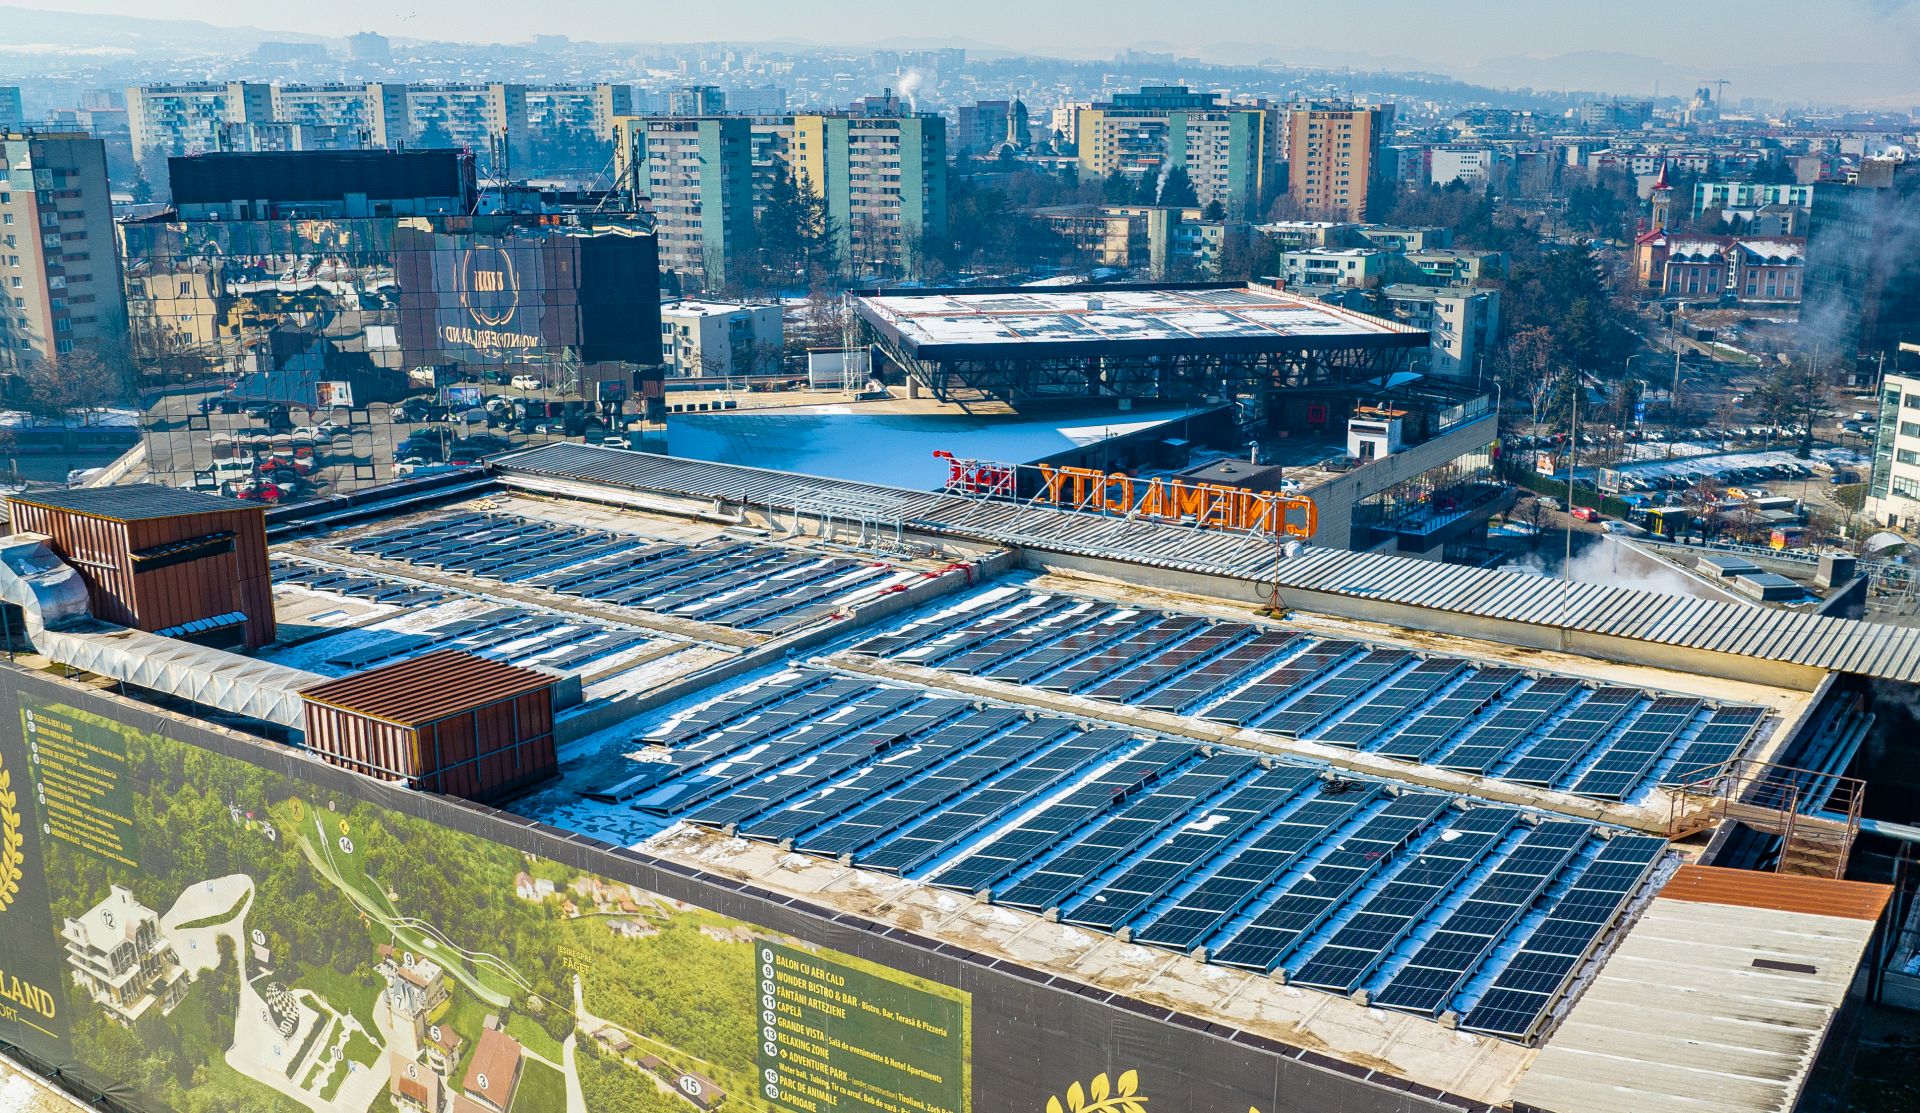 Grupul IULIUS a montat panouri fotovoltaice pe toate proprietăţile din portofoliu, inclusiv pe Iulius Mall Cluj, care vor produce 5.500 MWh anual, la nivel de grup